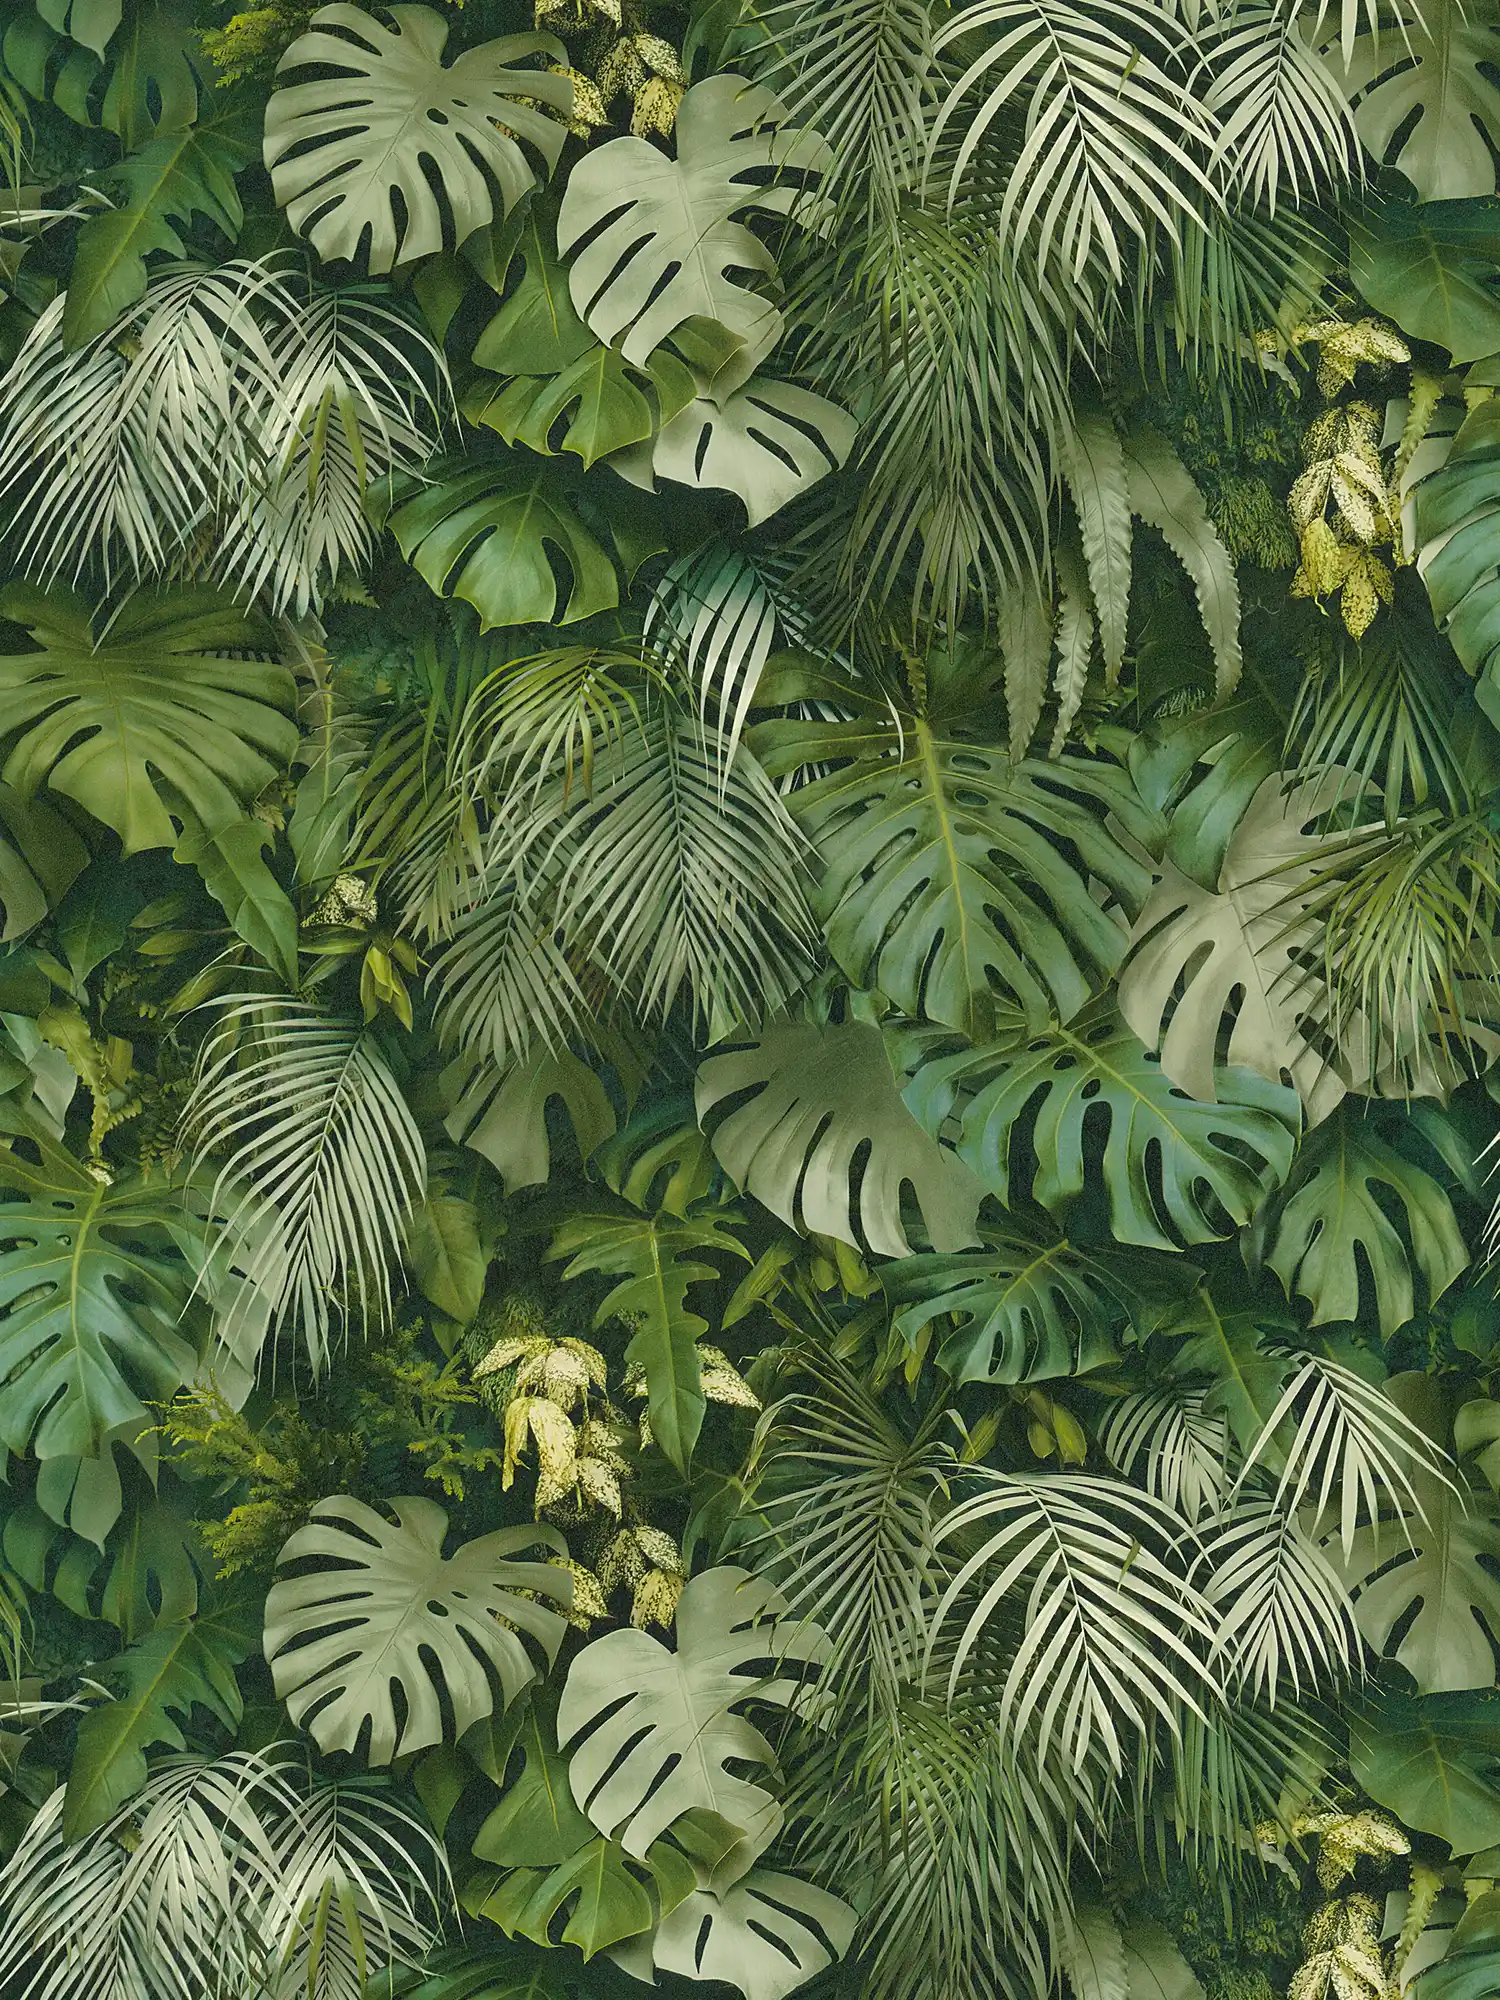         Tapete Grüner Blätterwald, realistisch, Farbakzente – Grün
    